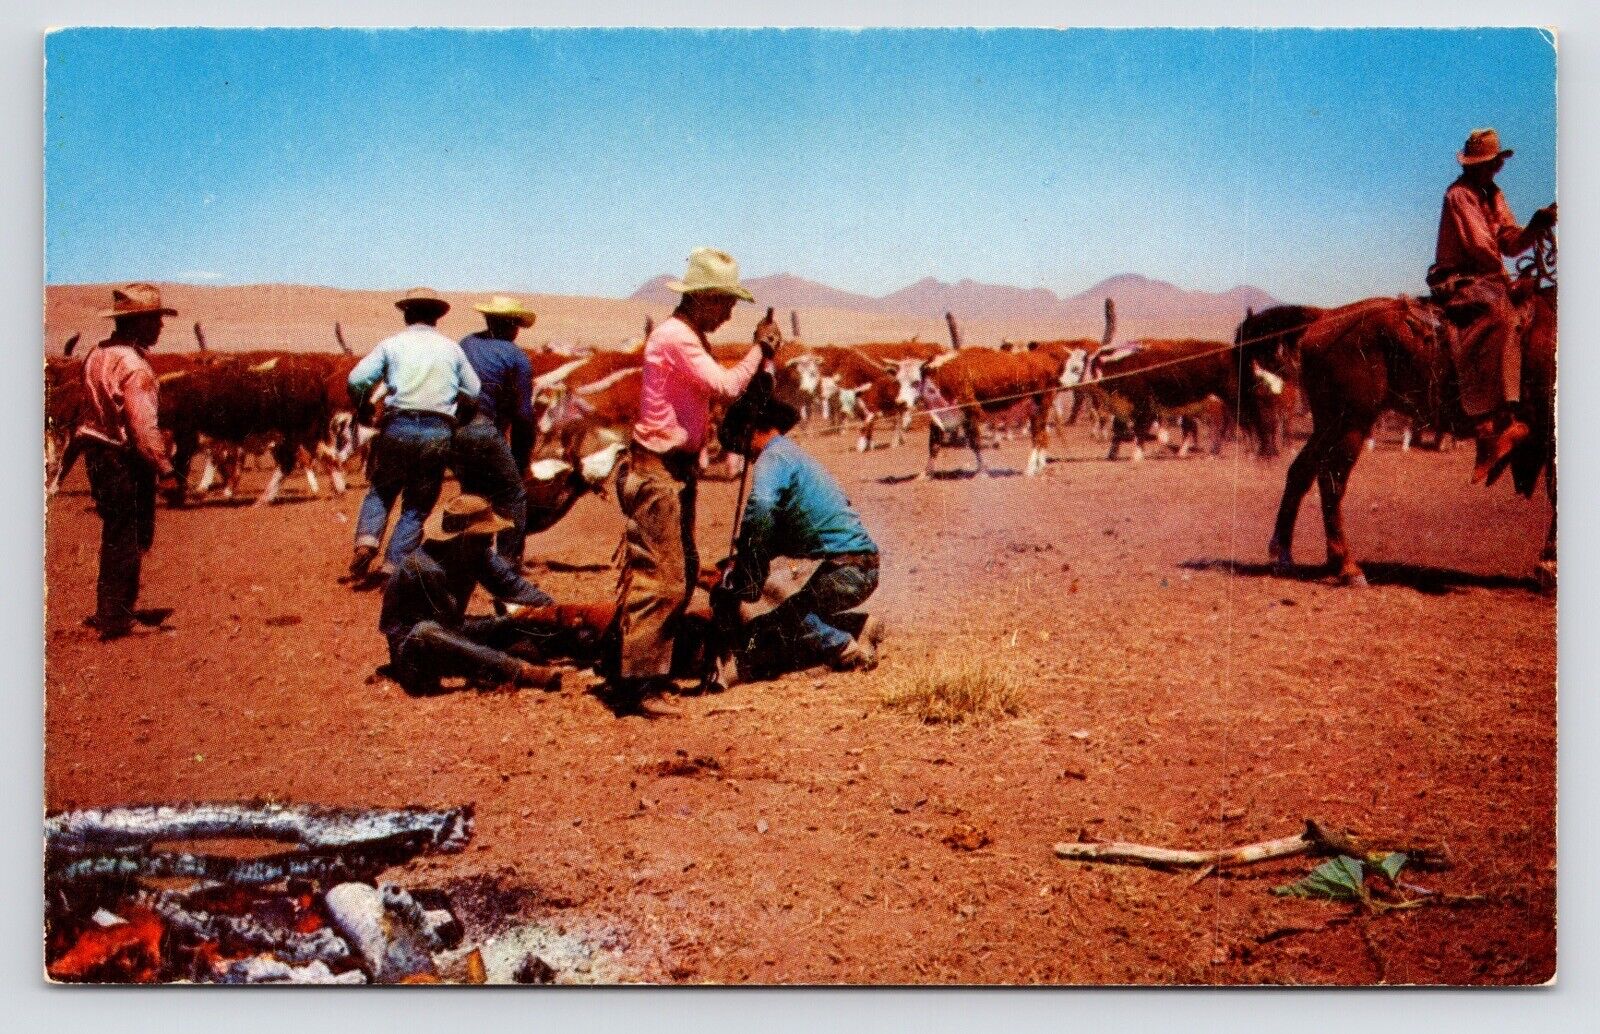 c1950s-60s Cowboys Branding Cattle~Western Scene in Desert~Vintage VTG Postcard